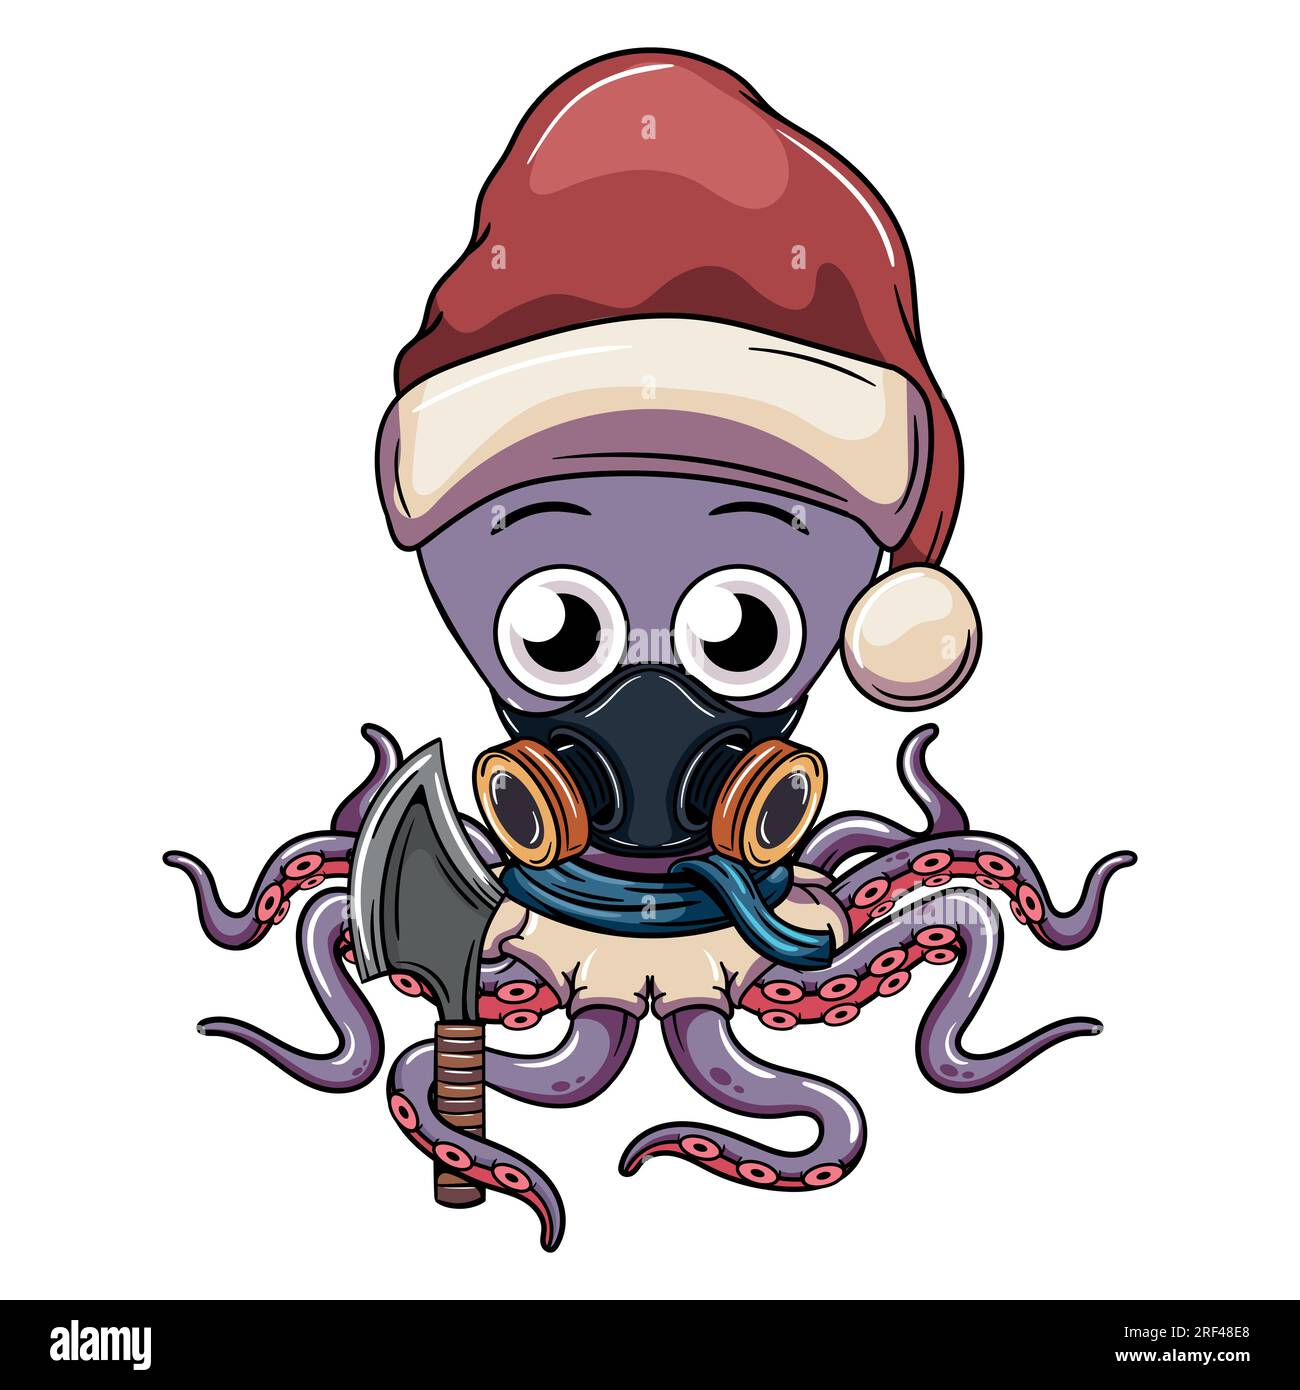 Personnage de poulpe de dessin animé avec le chapeau du père noël et avec une hache dans son tentacule. Illustration pour fantasy, science-fiction et comique d'aventure Illustration de Vecteur